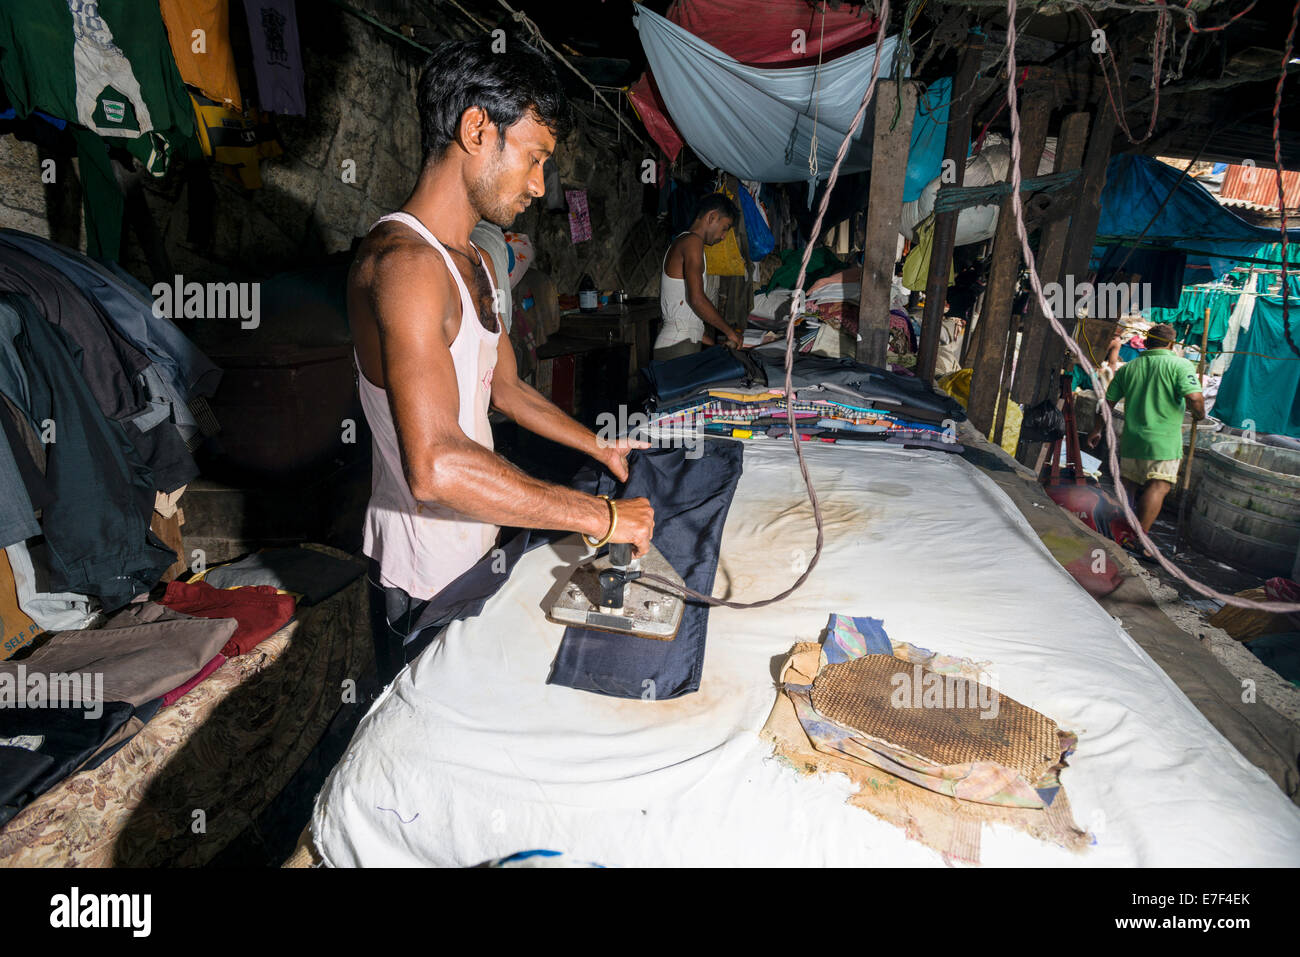 A labourer is ironing laundry at Mahalaxmi Dhobi Ghat, laundry district of Mumbai, Maharashtra, India Stock Photo